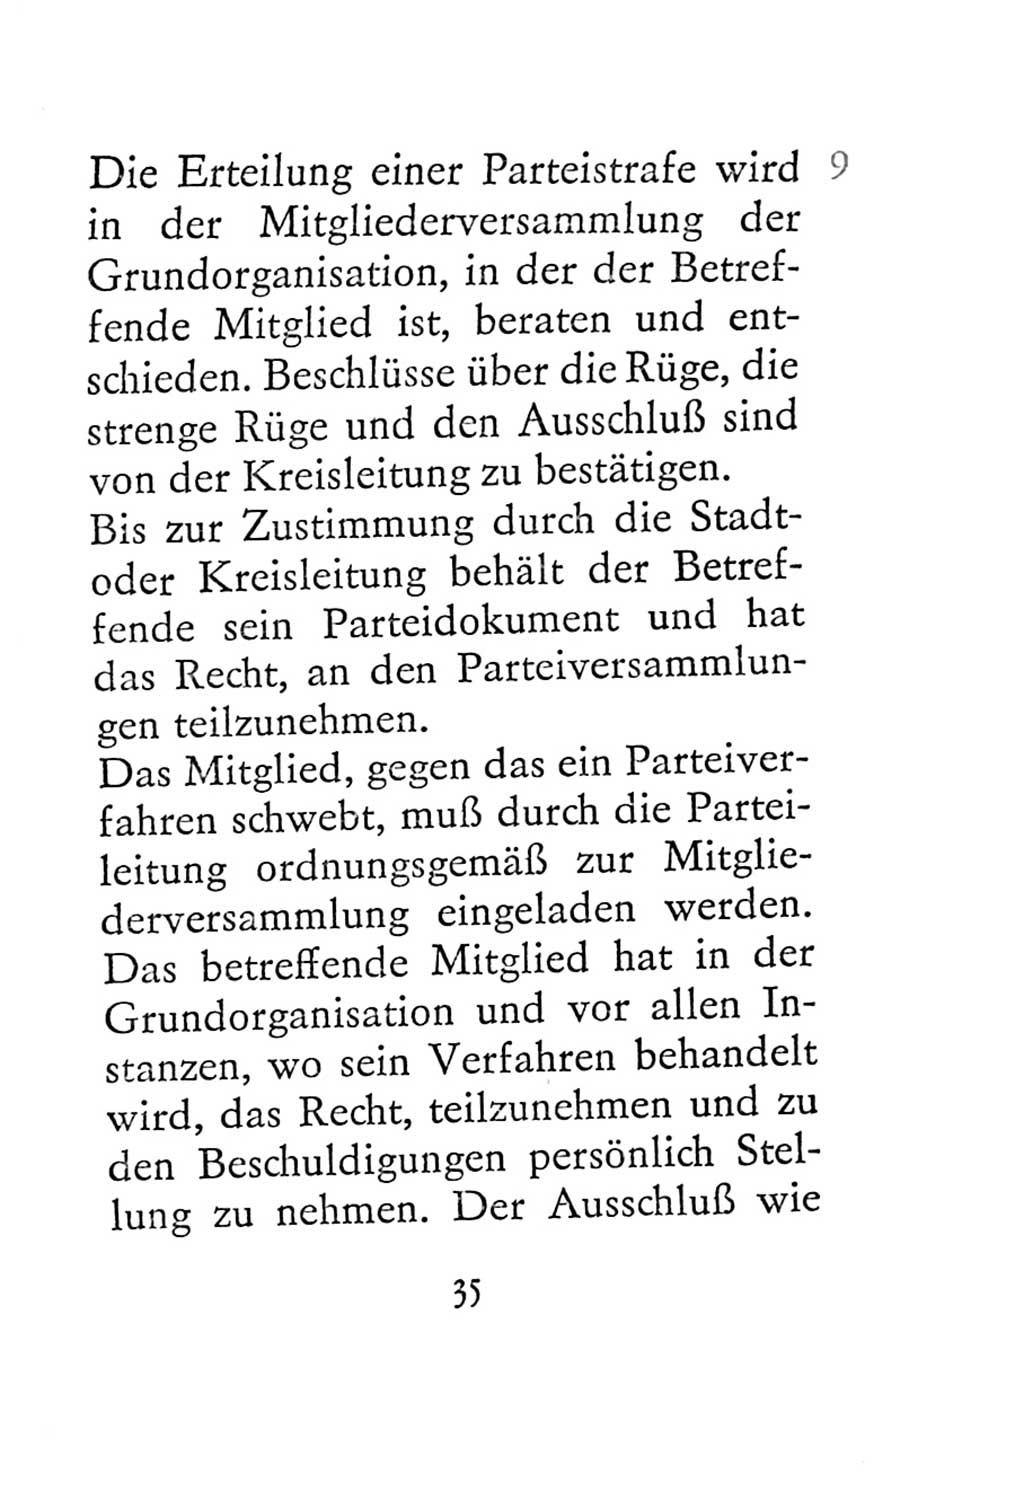 Statut der Sozialistischen Einheitspartei Deutschlands (SED) 1967, Seite 35 (St. SED DDR 1967, S. 35)